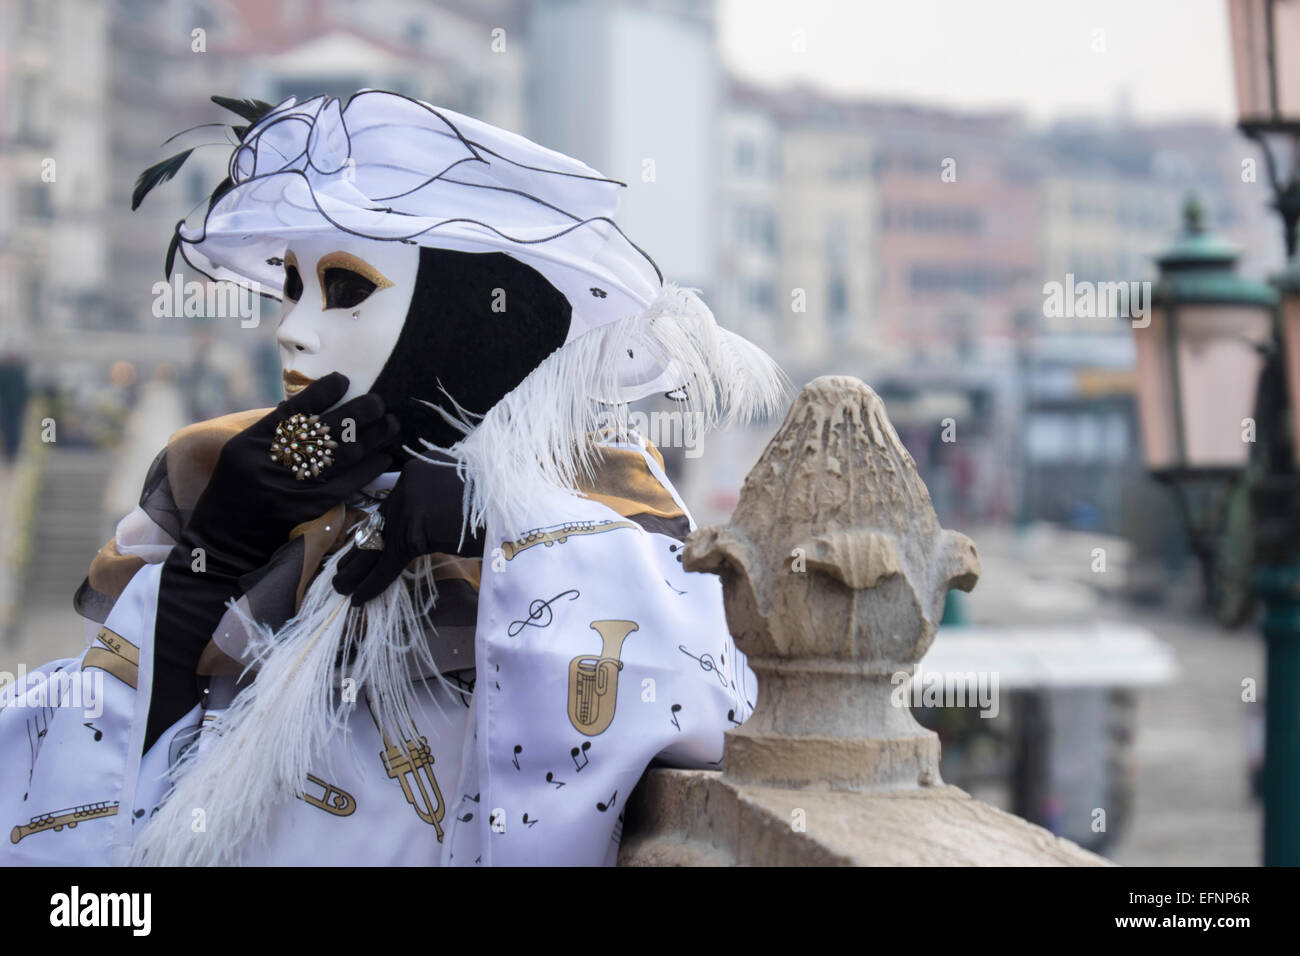 Ein einheimischer tragen aufwendige Kostüm und Maske stellt für th Kamera während der Karneval von Venedig, Italien Stockfoto